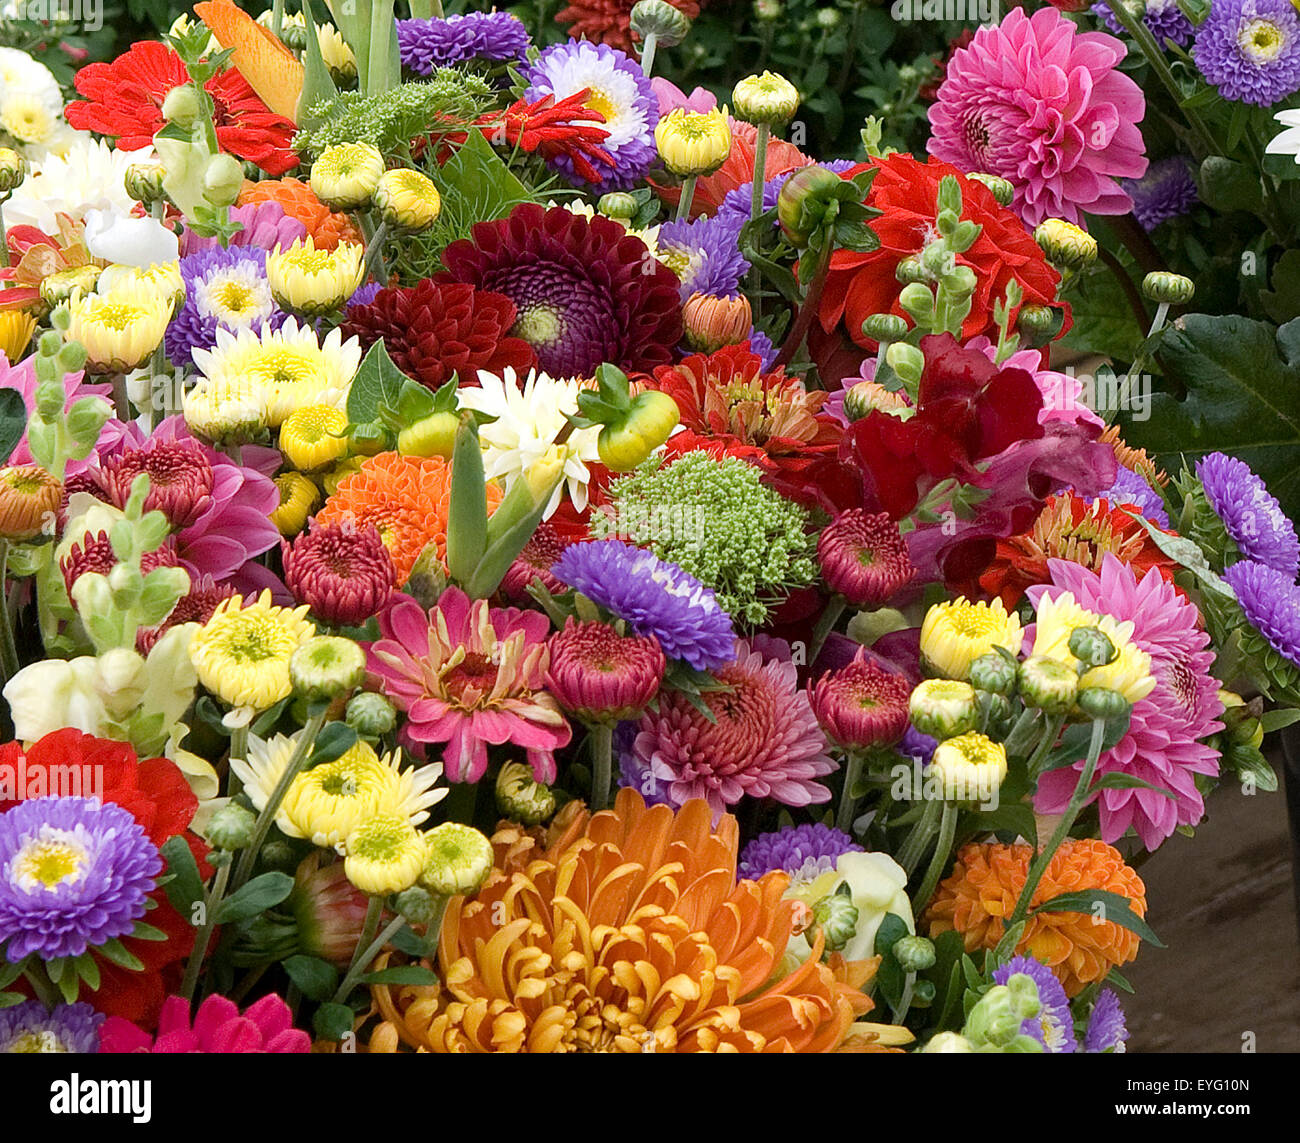 Blumenmarkt, Blumenstrauss Stock Photo